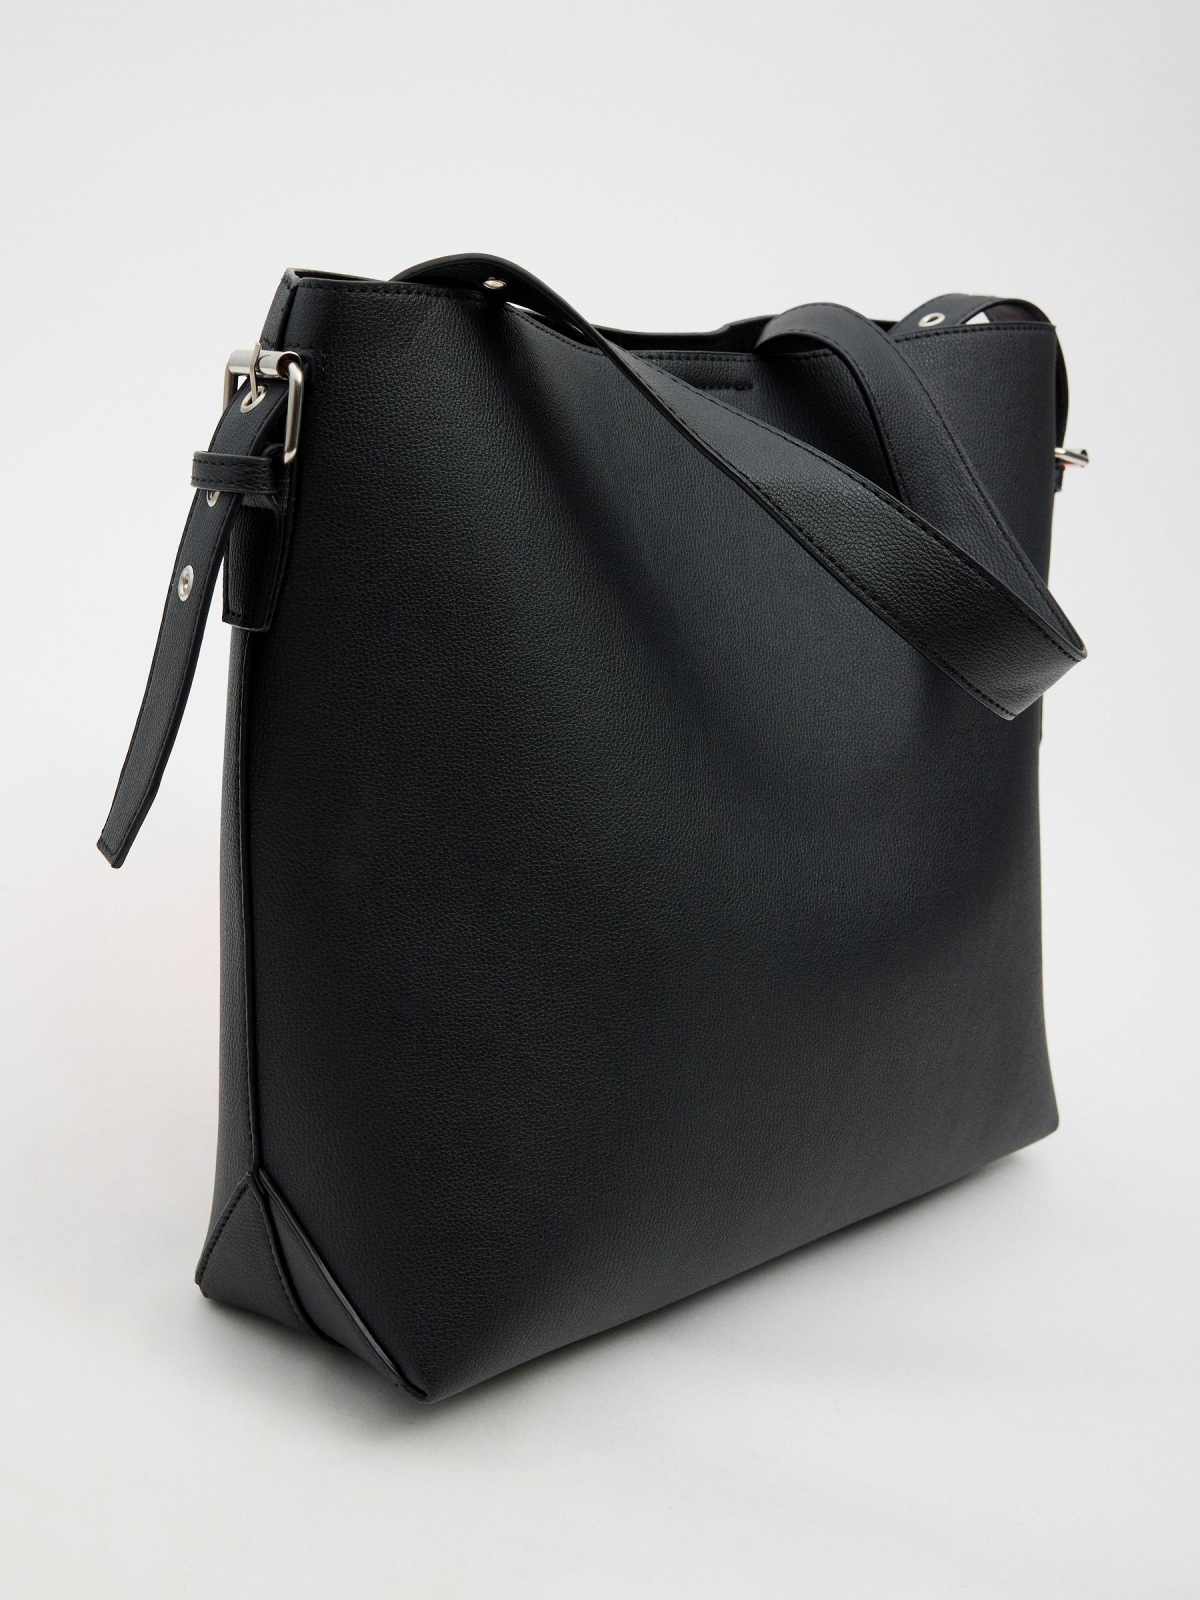 Bolsa com alça ajustável preto vista traseira